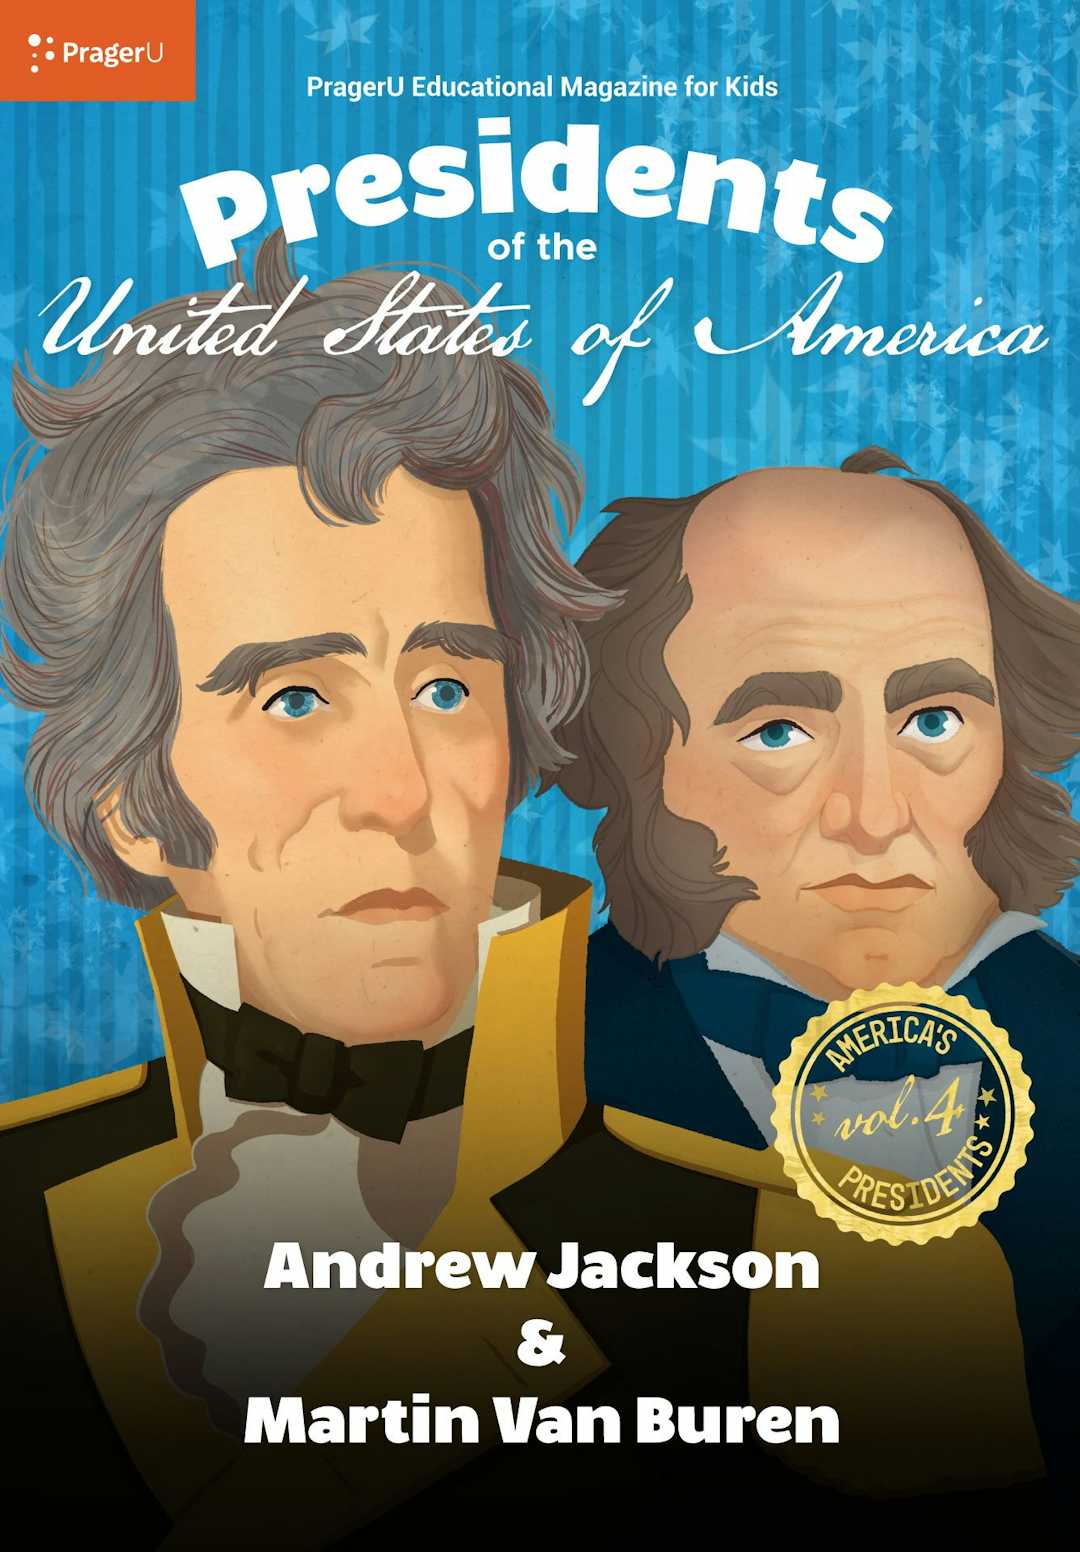 U.S. Presidents Volume 4: Andrew Jackson & Martin Van Buren